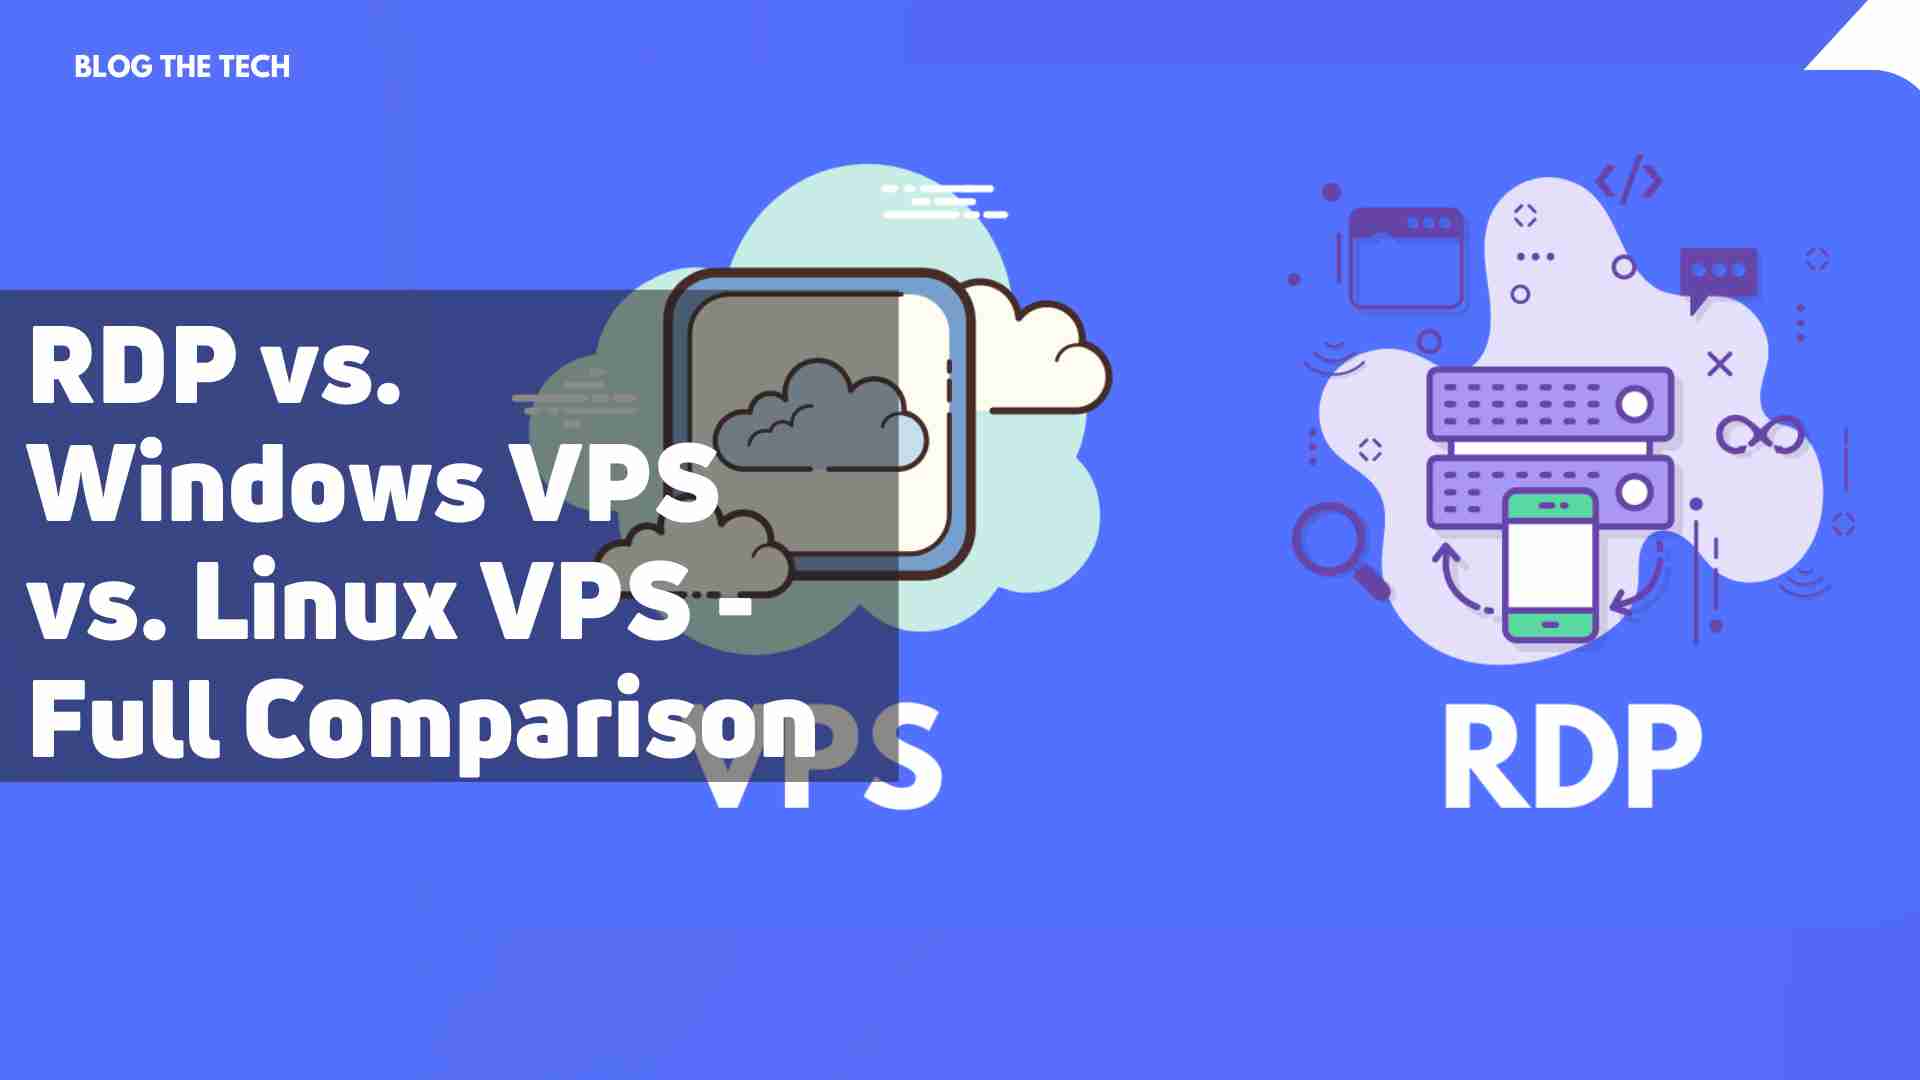 RDP vs. Windows VPS vs. Linux VPS Full Comparison